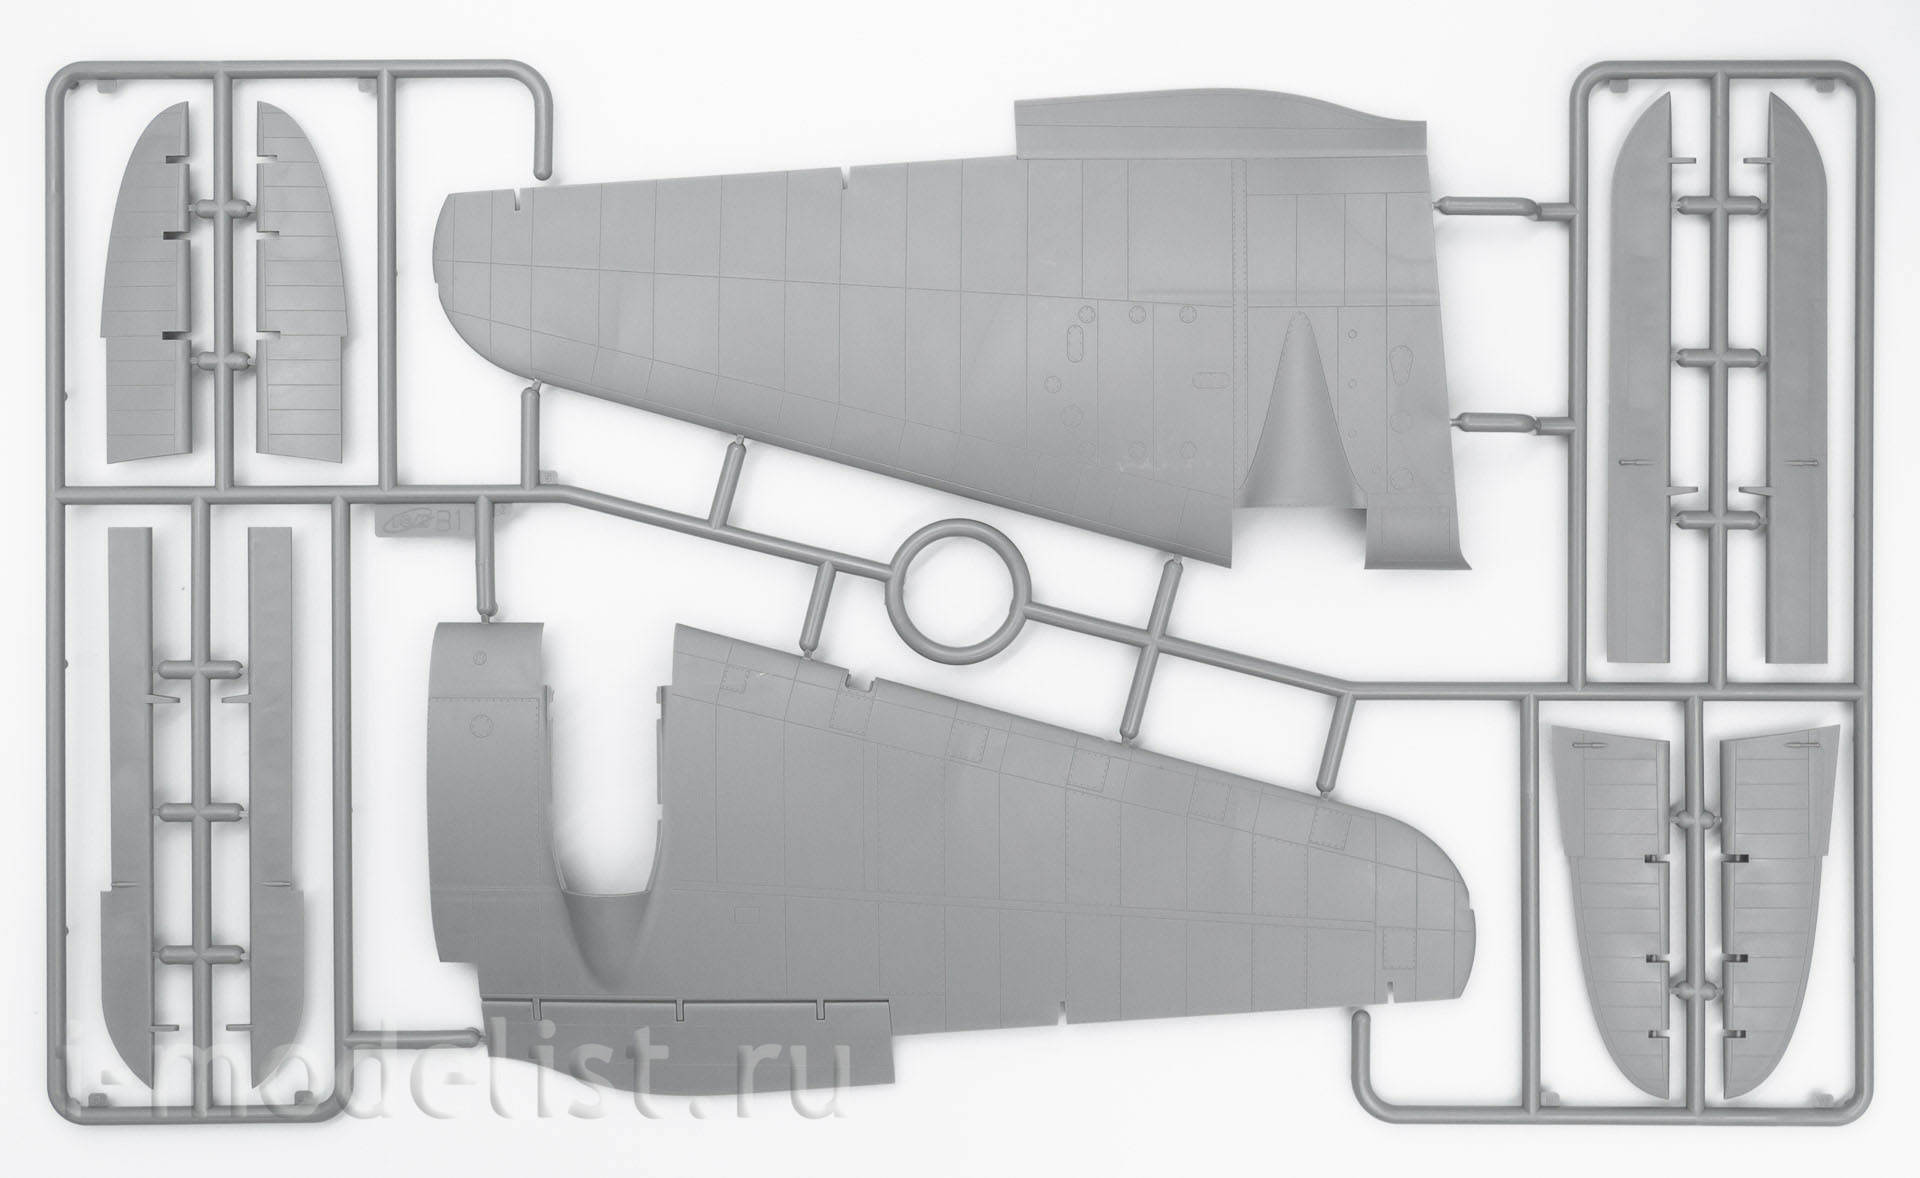 48266 ICM 1/48 ВВС Румынии, Бомбардировщик II МВ He 111H-3 